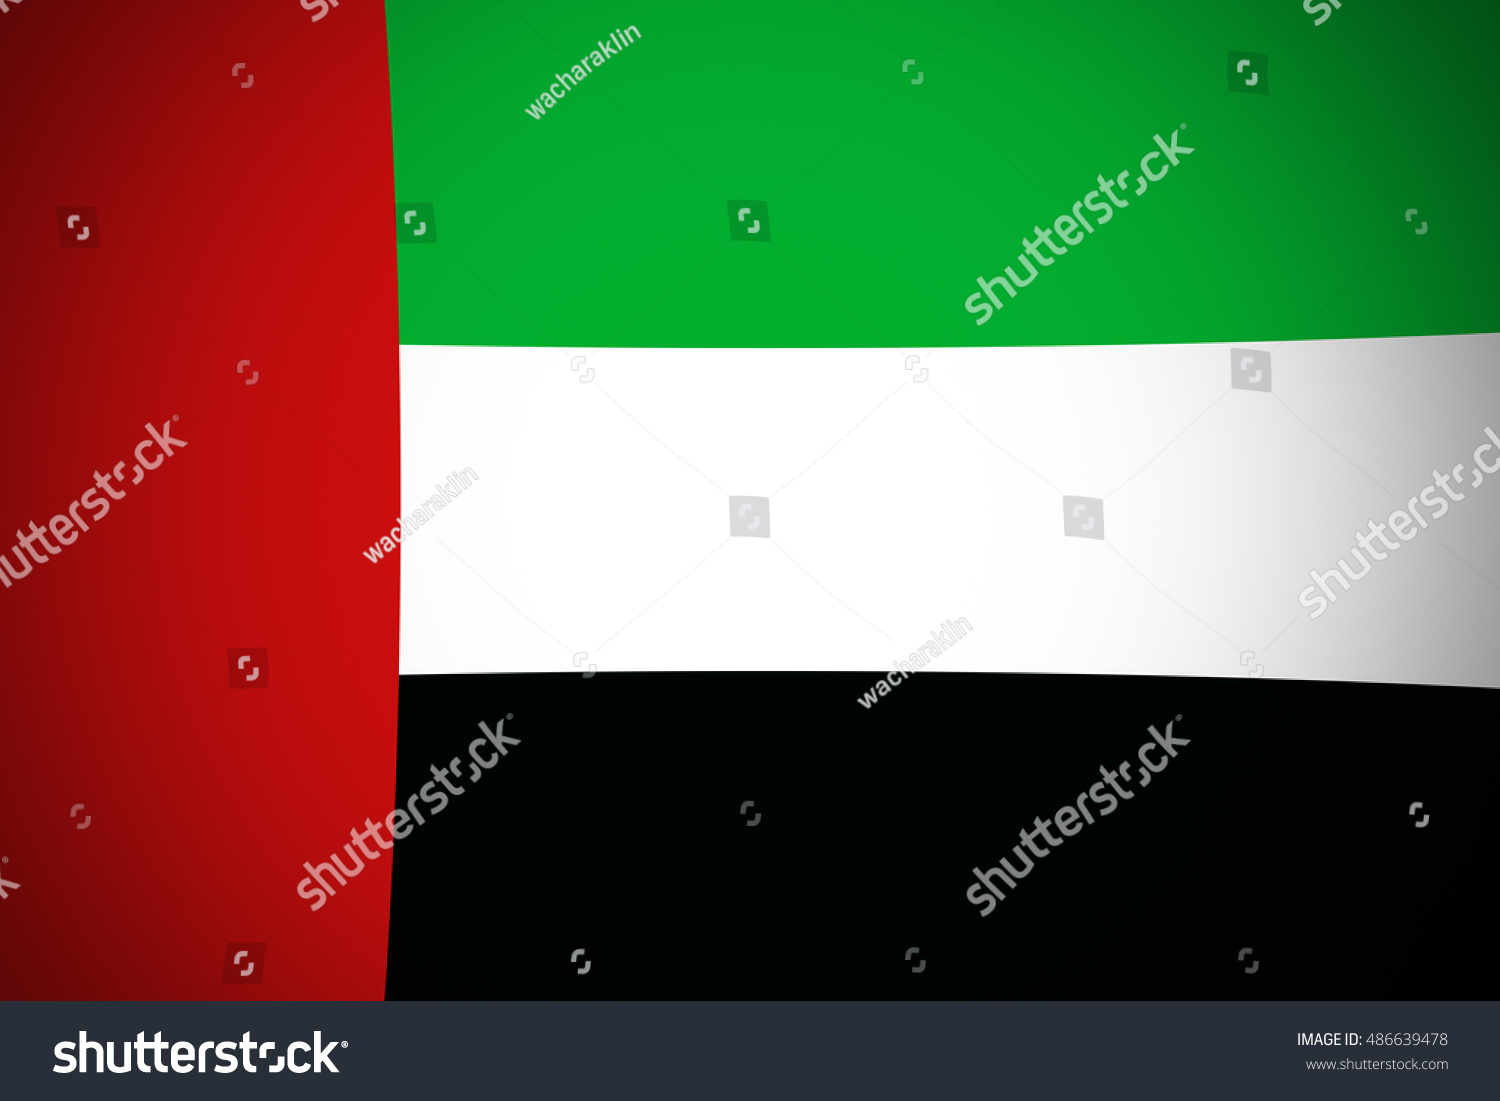 United Arab Emirates flag ,original and simple United Arab Emirates flag,UAE #486639478